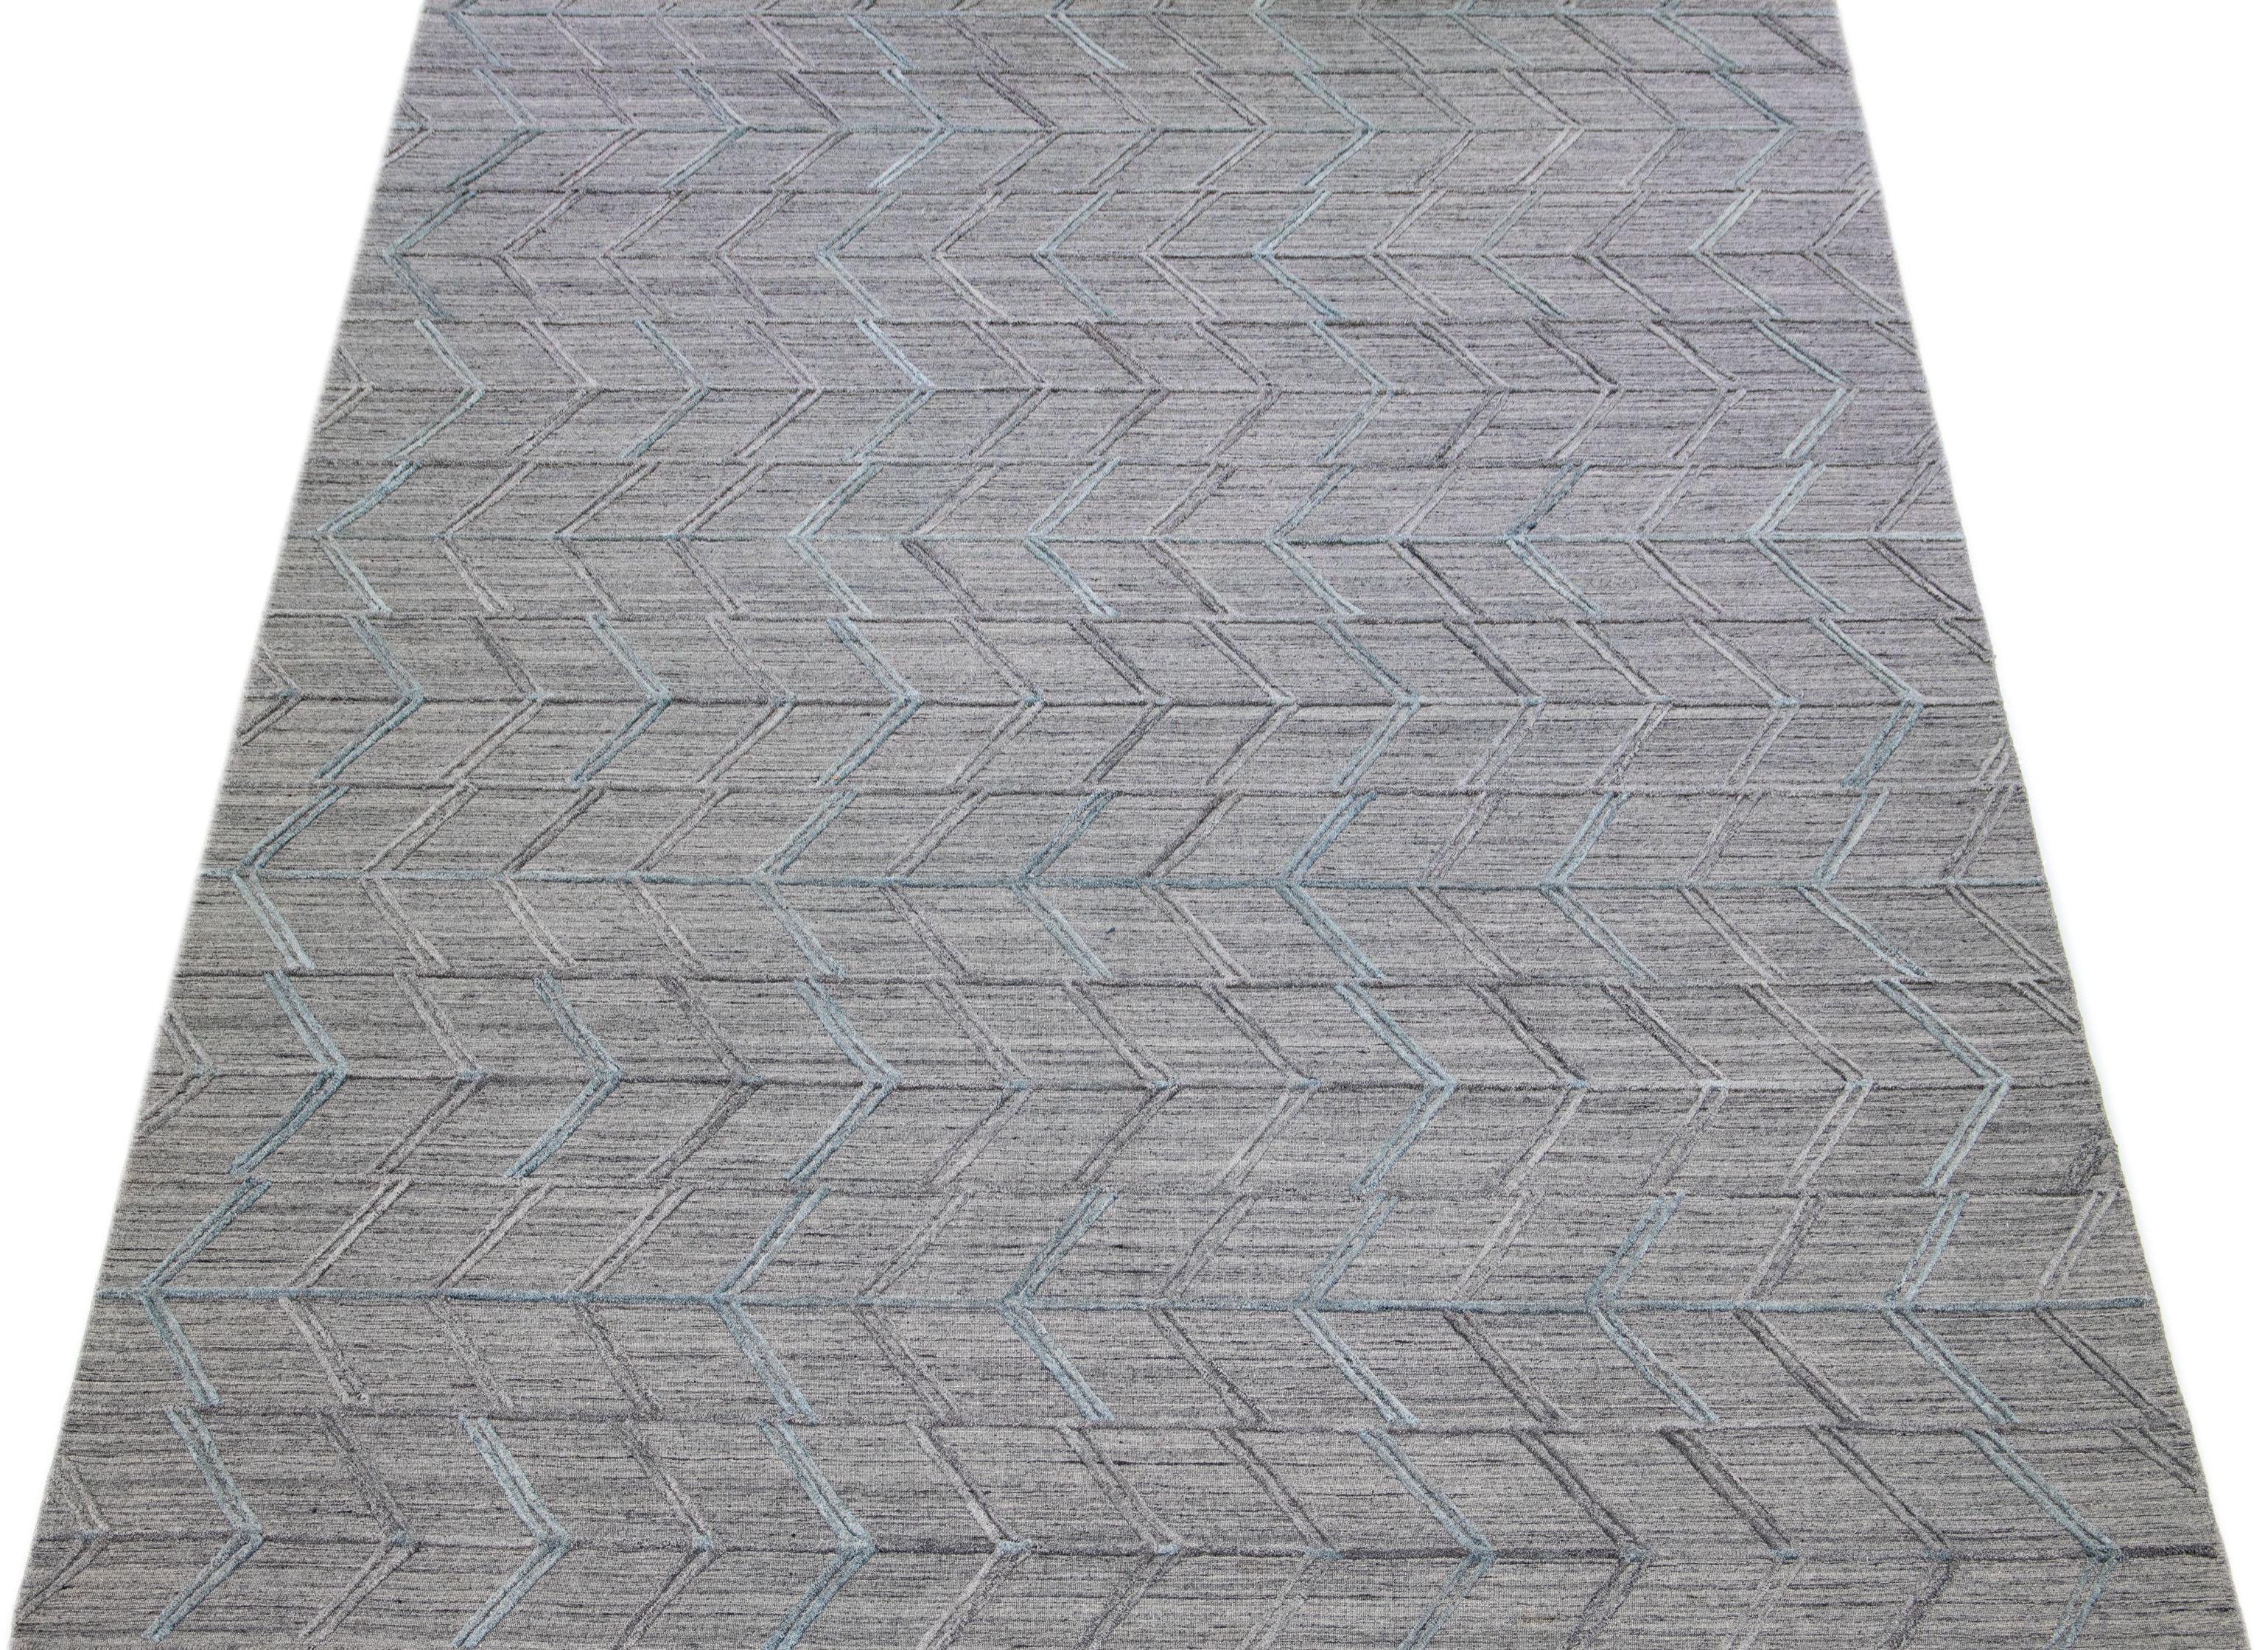 Erleben Sie die Schönheit eines modernen indischen Flachgewebe-Teppichs aus handgeknüpfter Wolle mit einem raffinierten grauen Feld. Zu seinem eleganten Charme trägt das strukturierte und anmutige hellblaue geometrische Muster bei, das sich durch